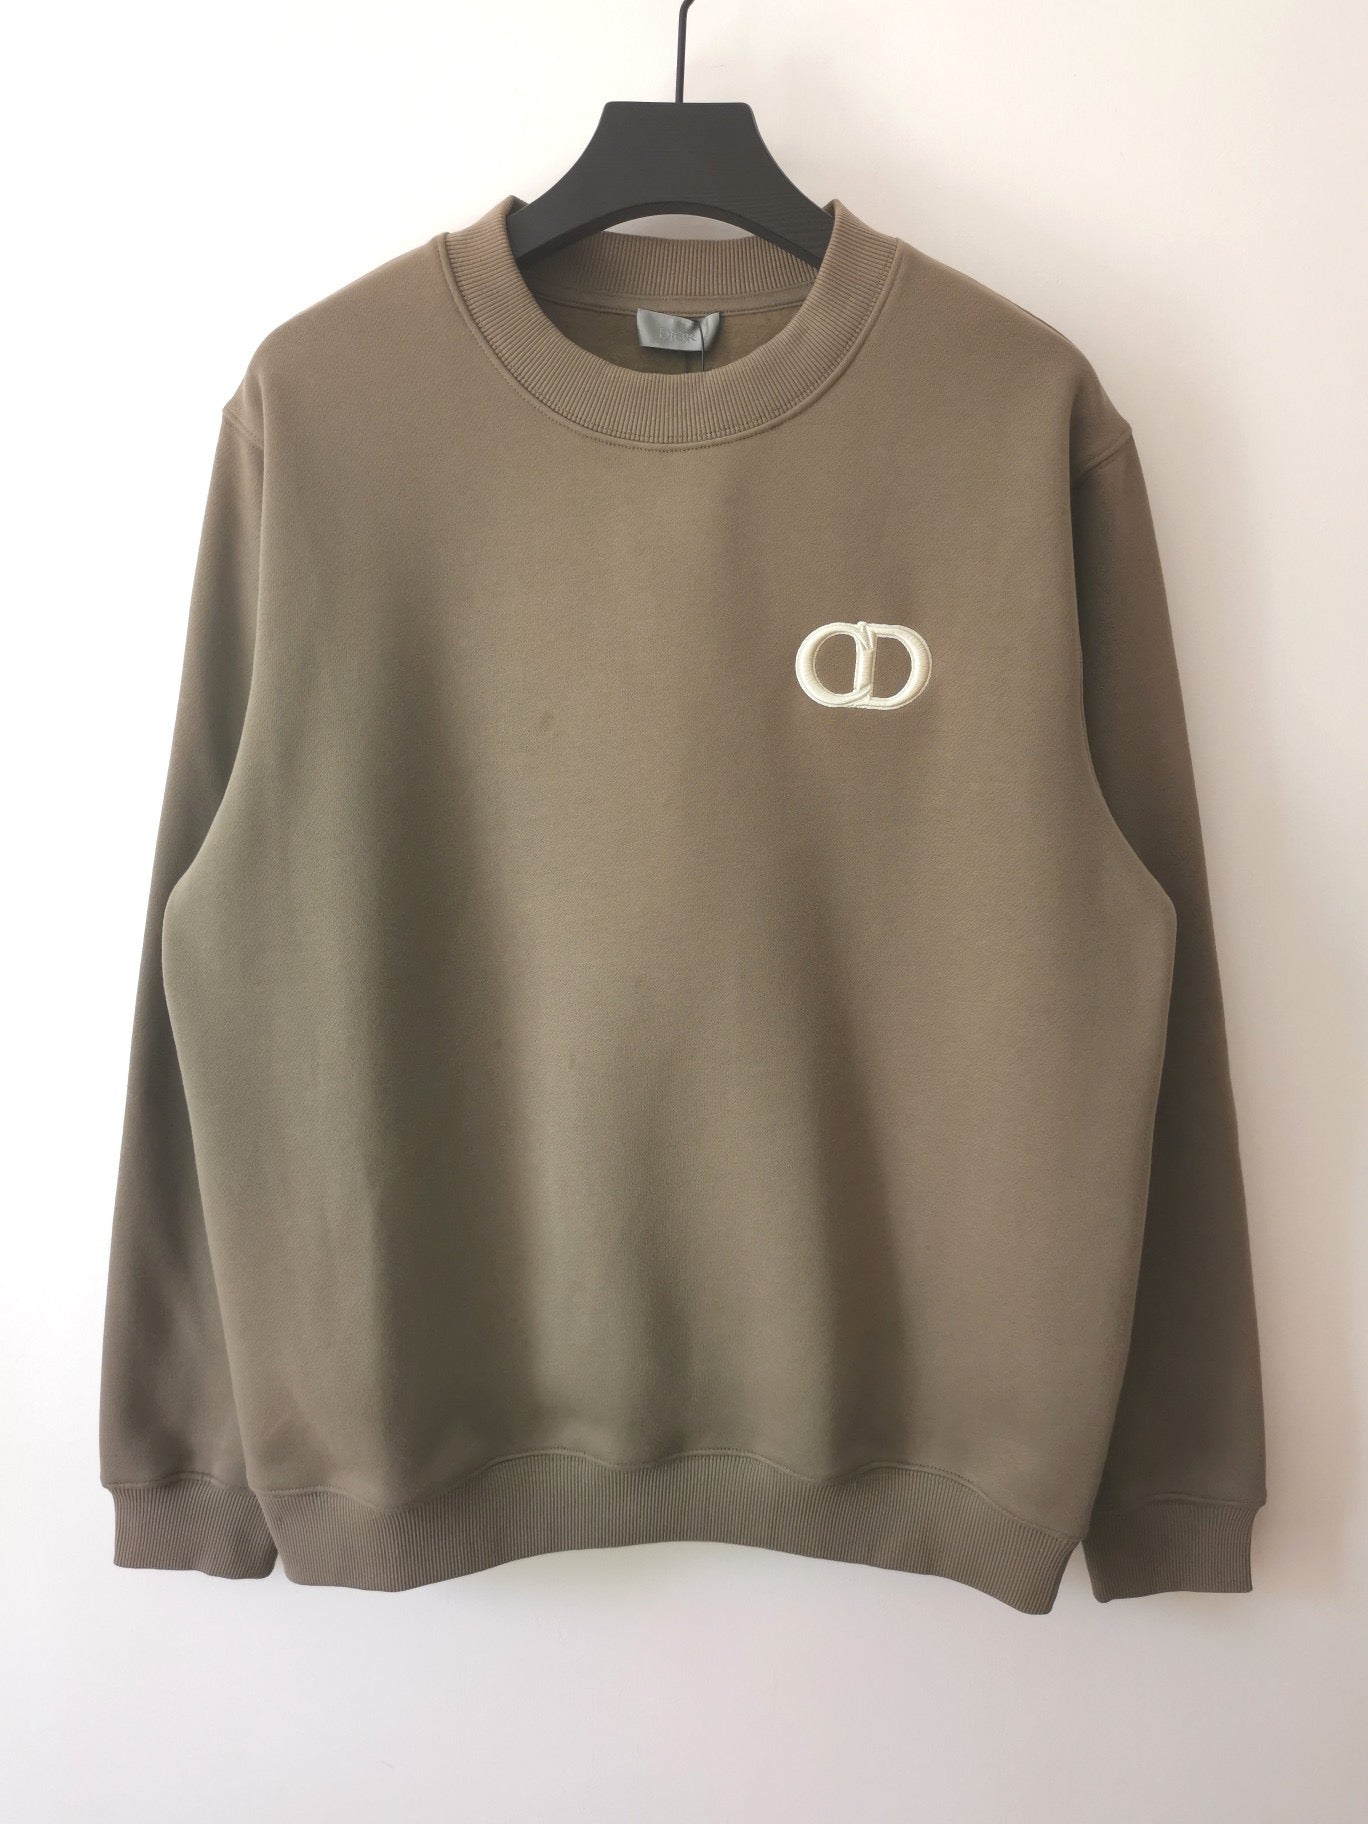 Brown Sweatshirt - Size S